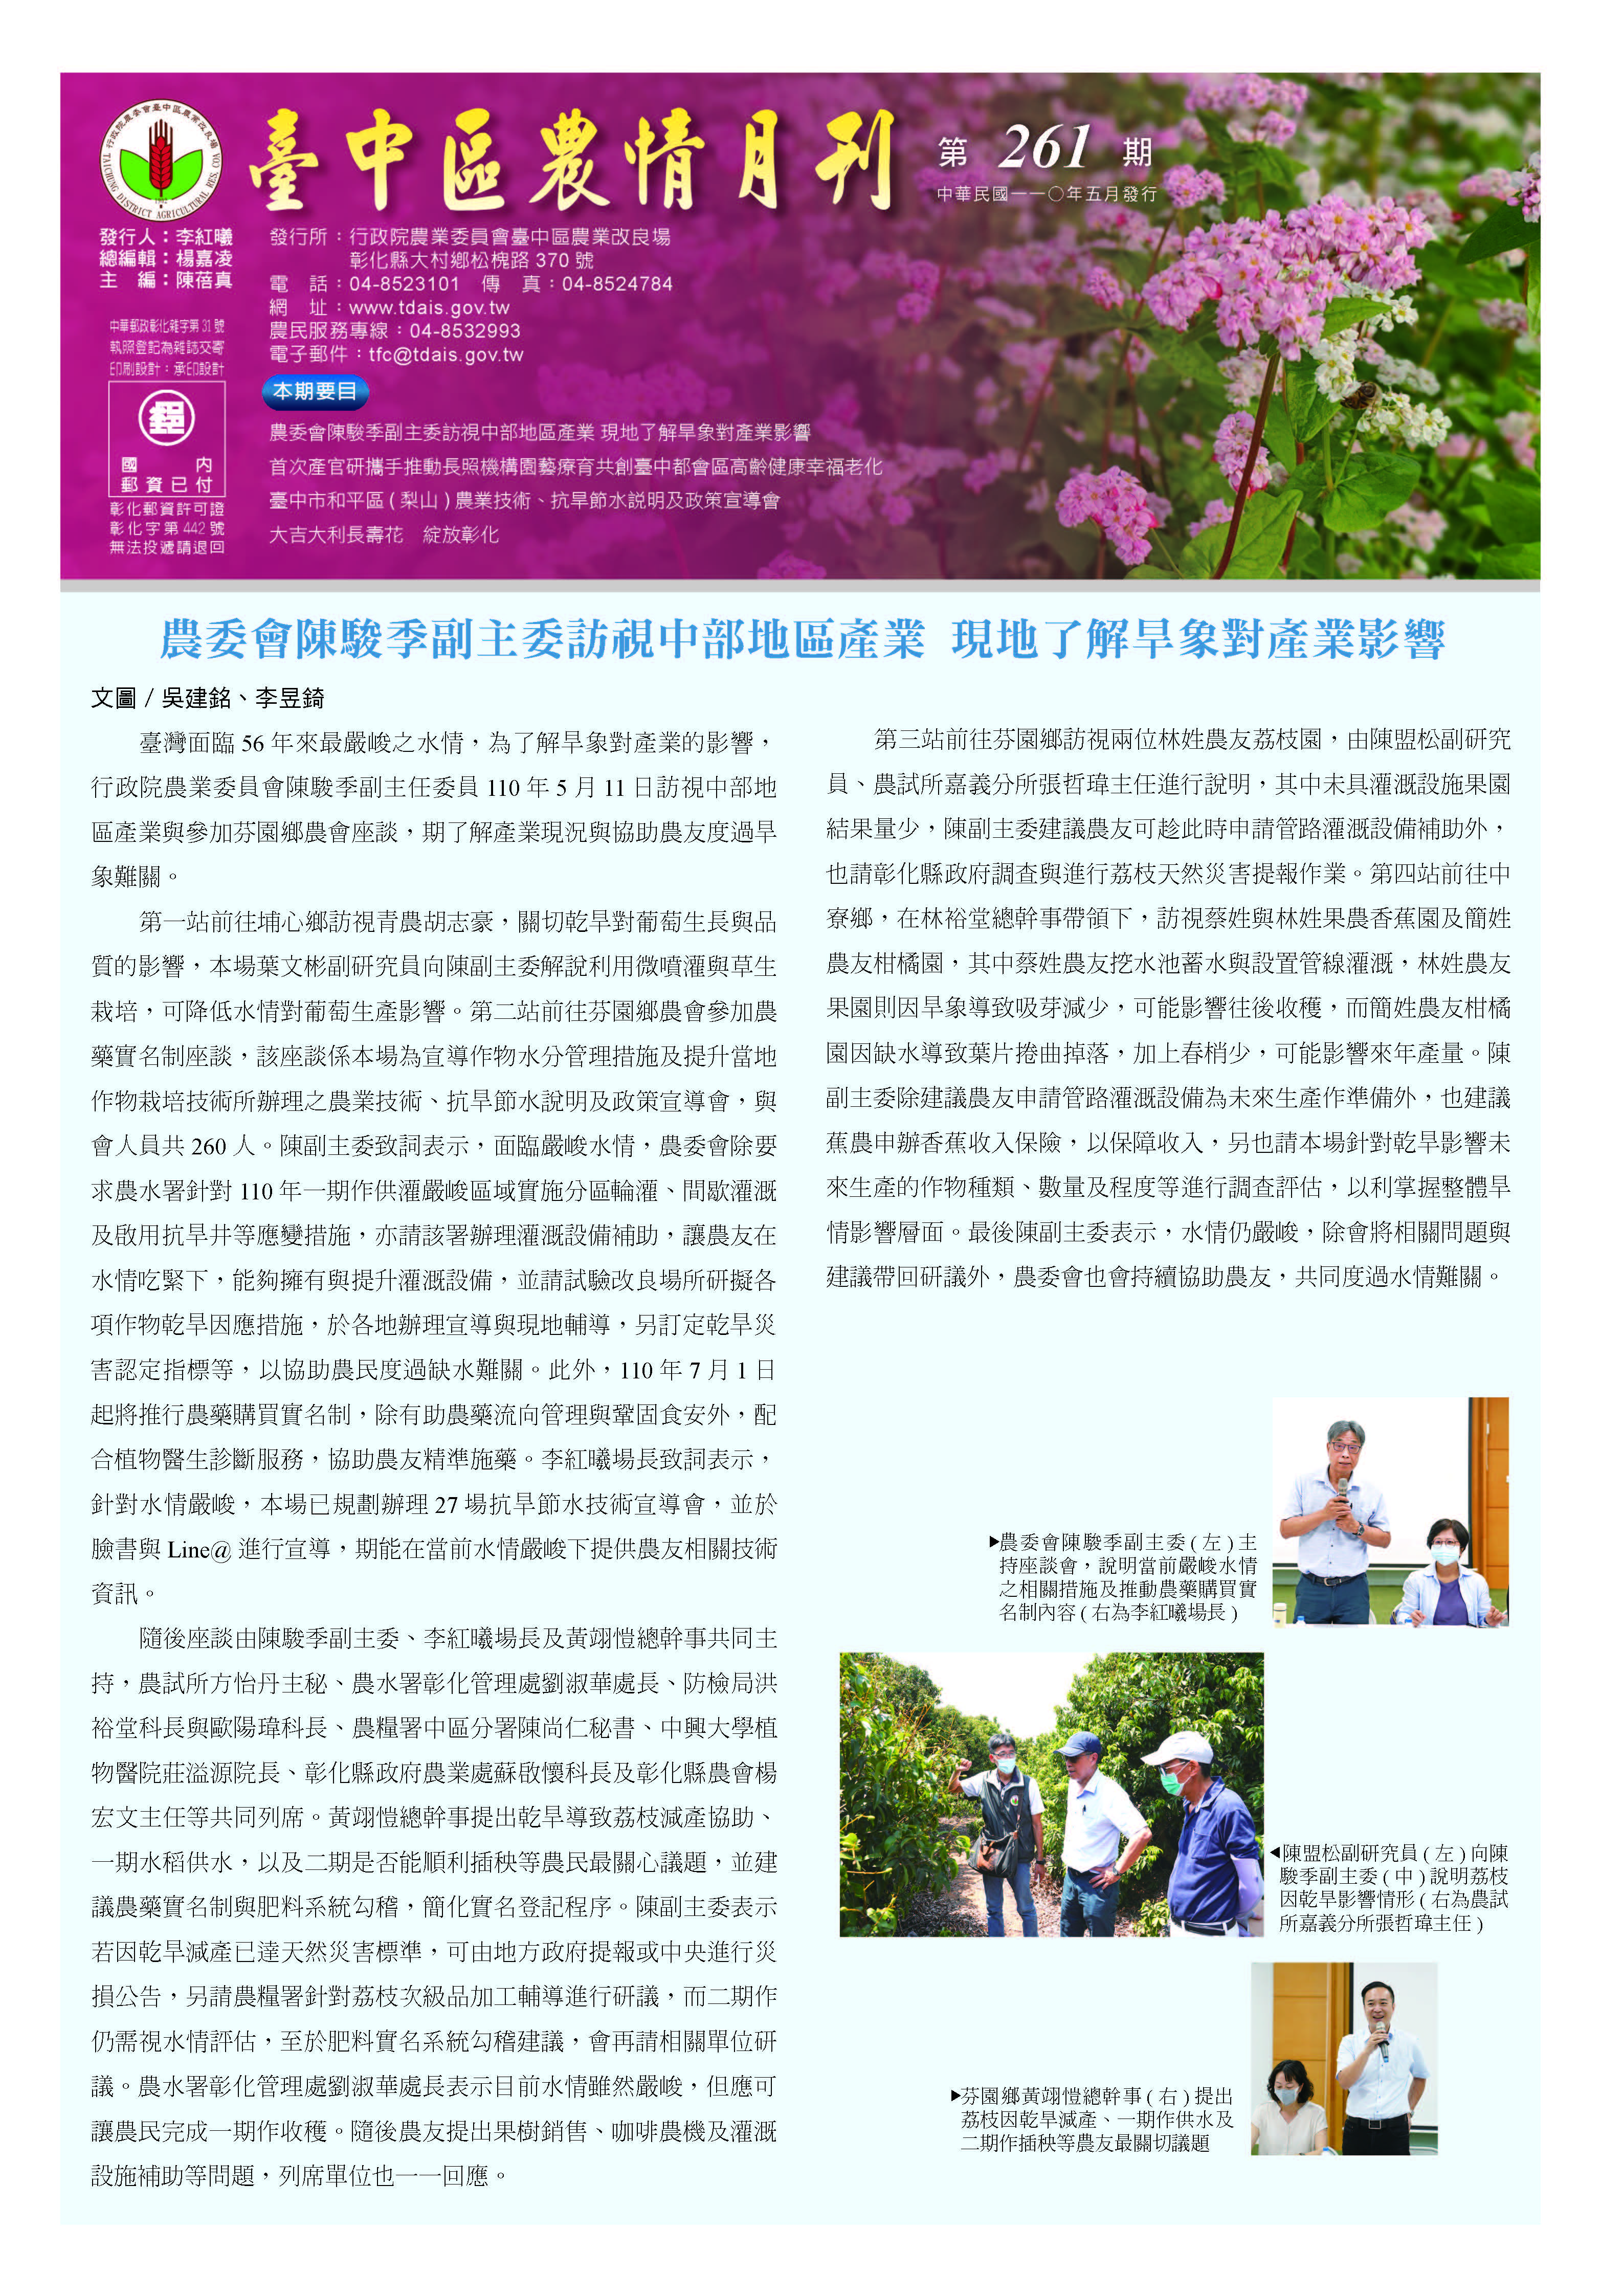 臺中區農情月刊第261期第一頁